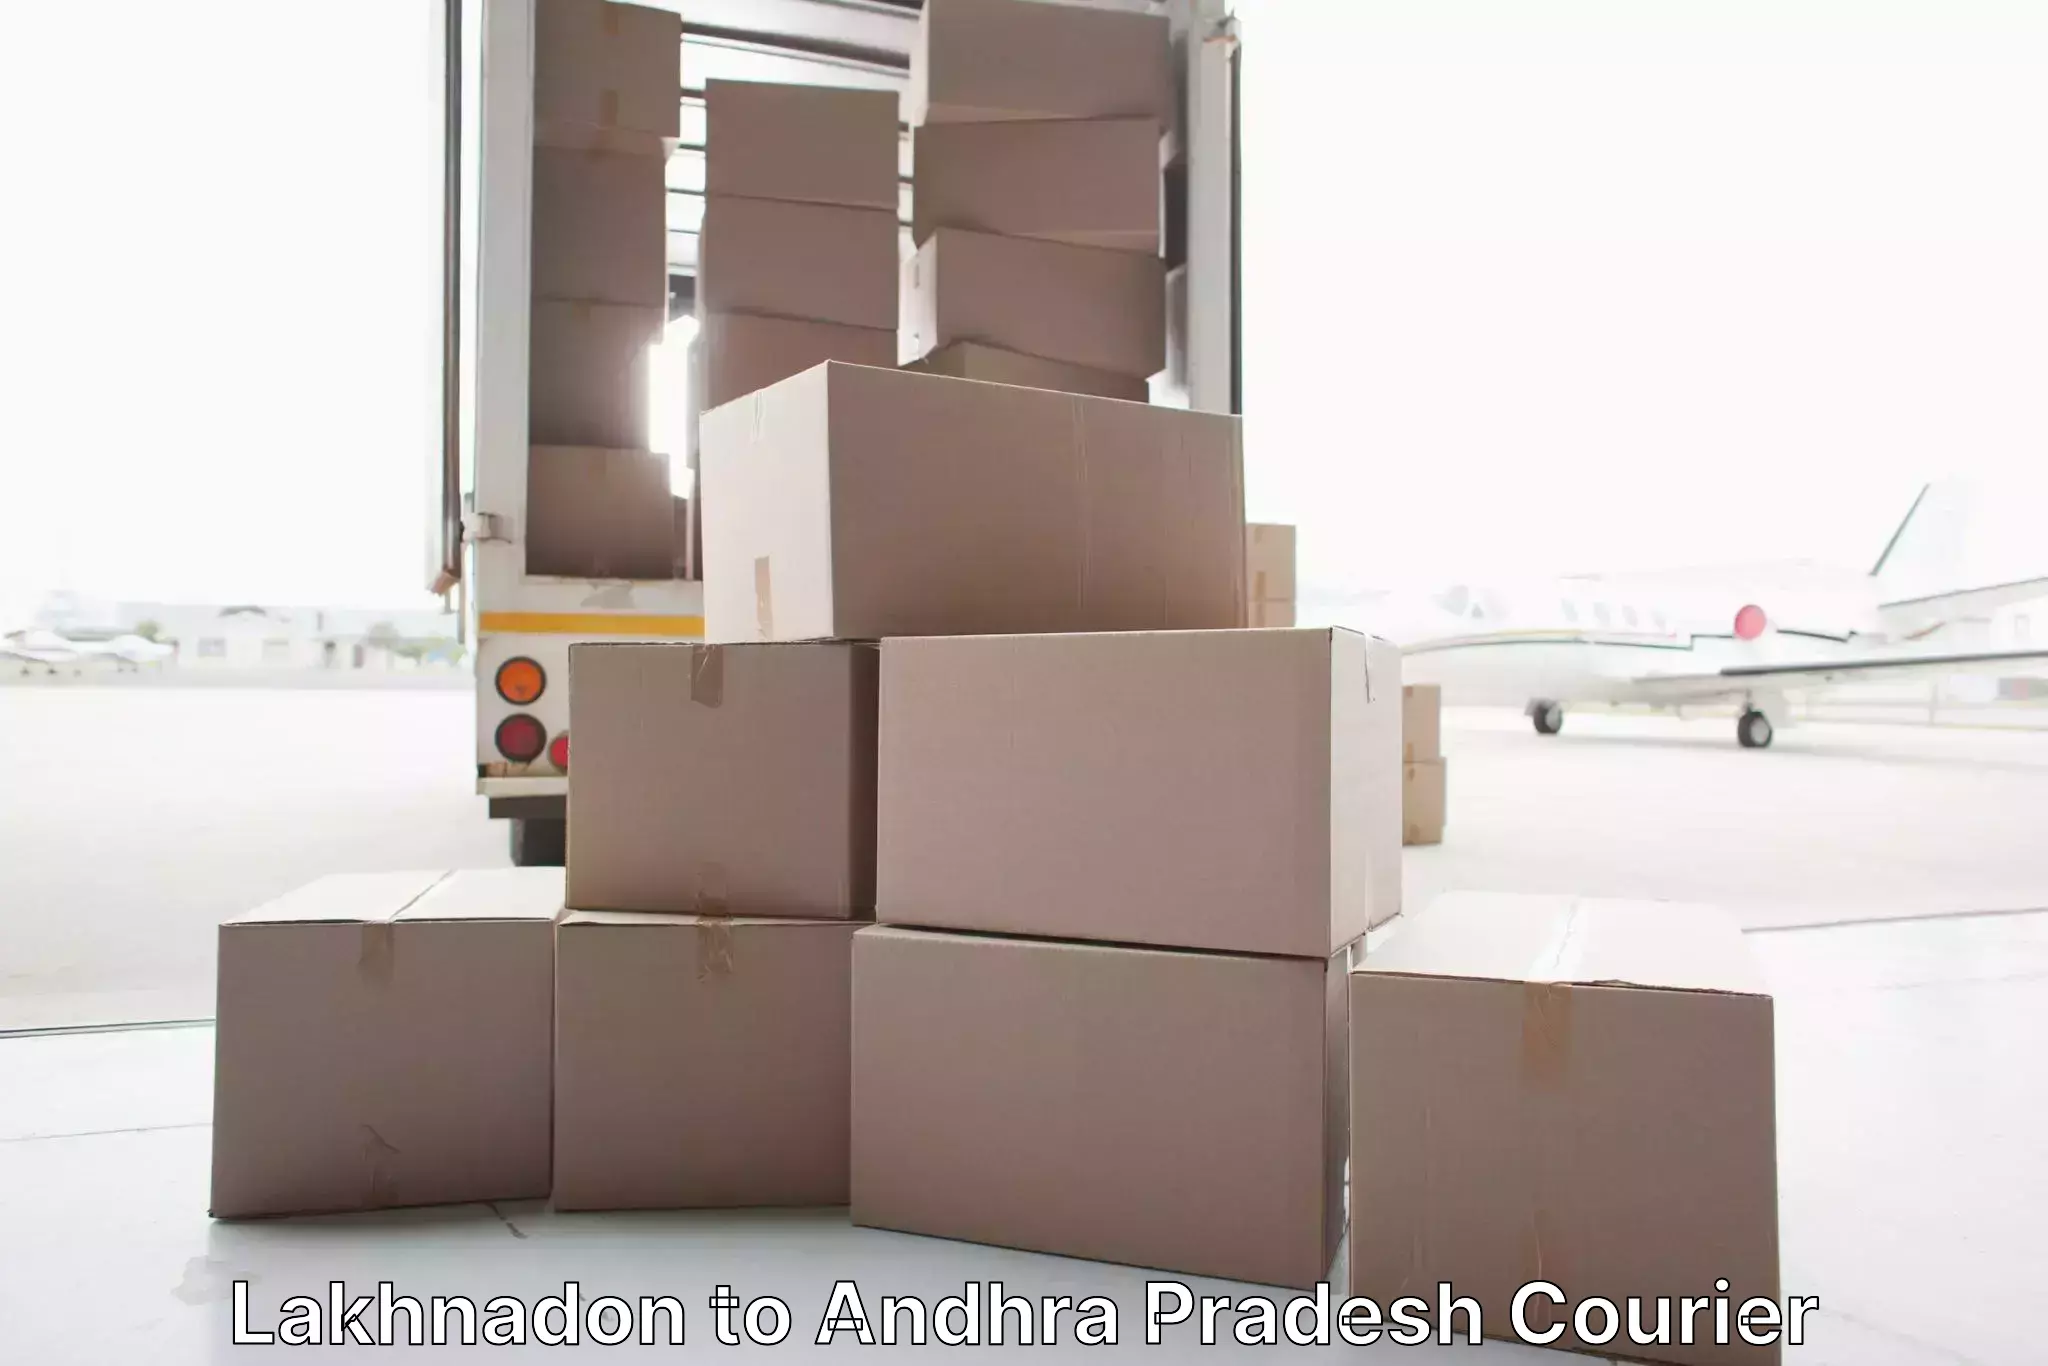 Trusted furniture transport Lakhnadon to Visakhapatnam Port